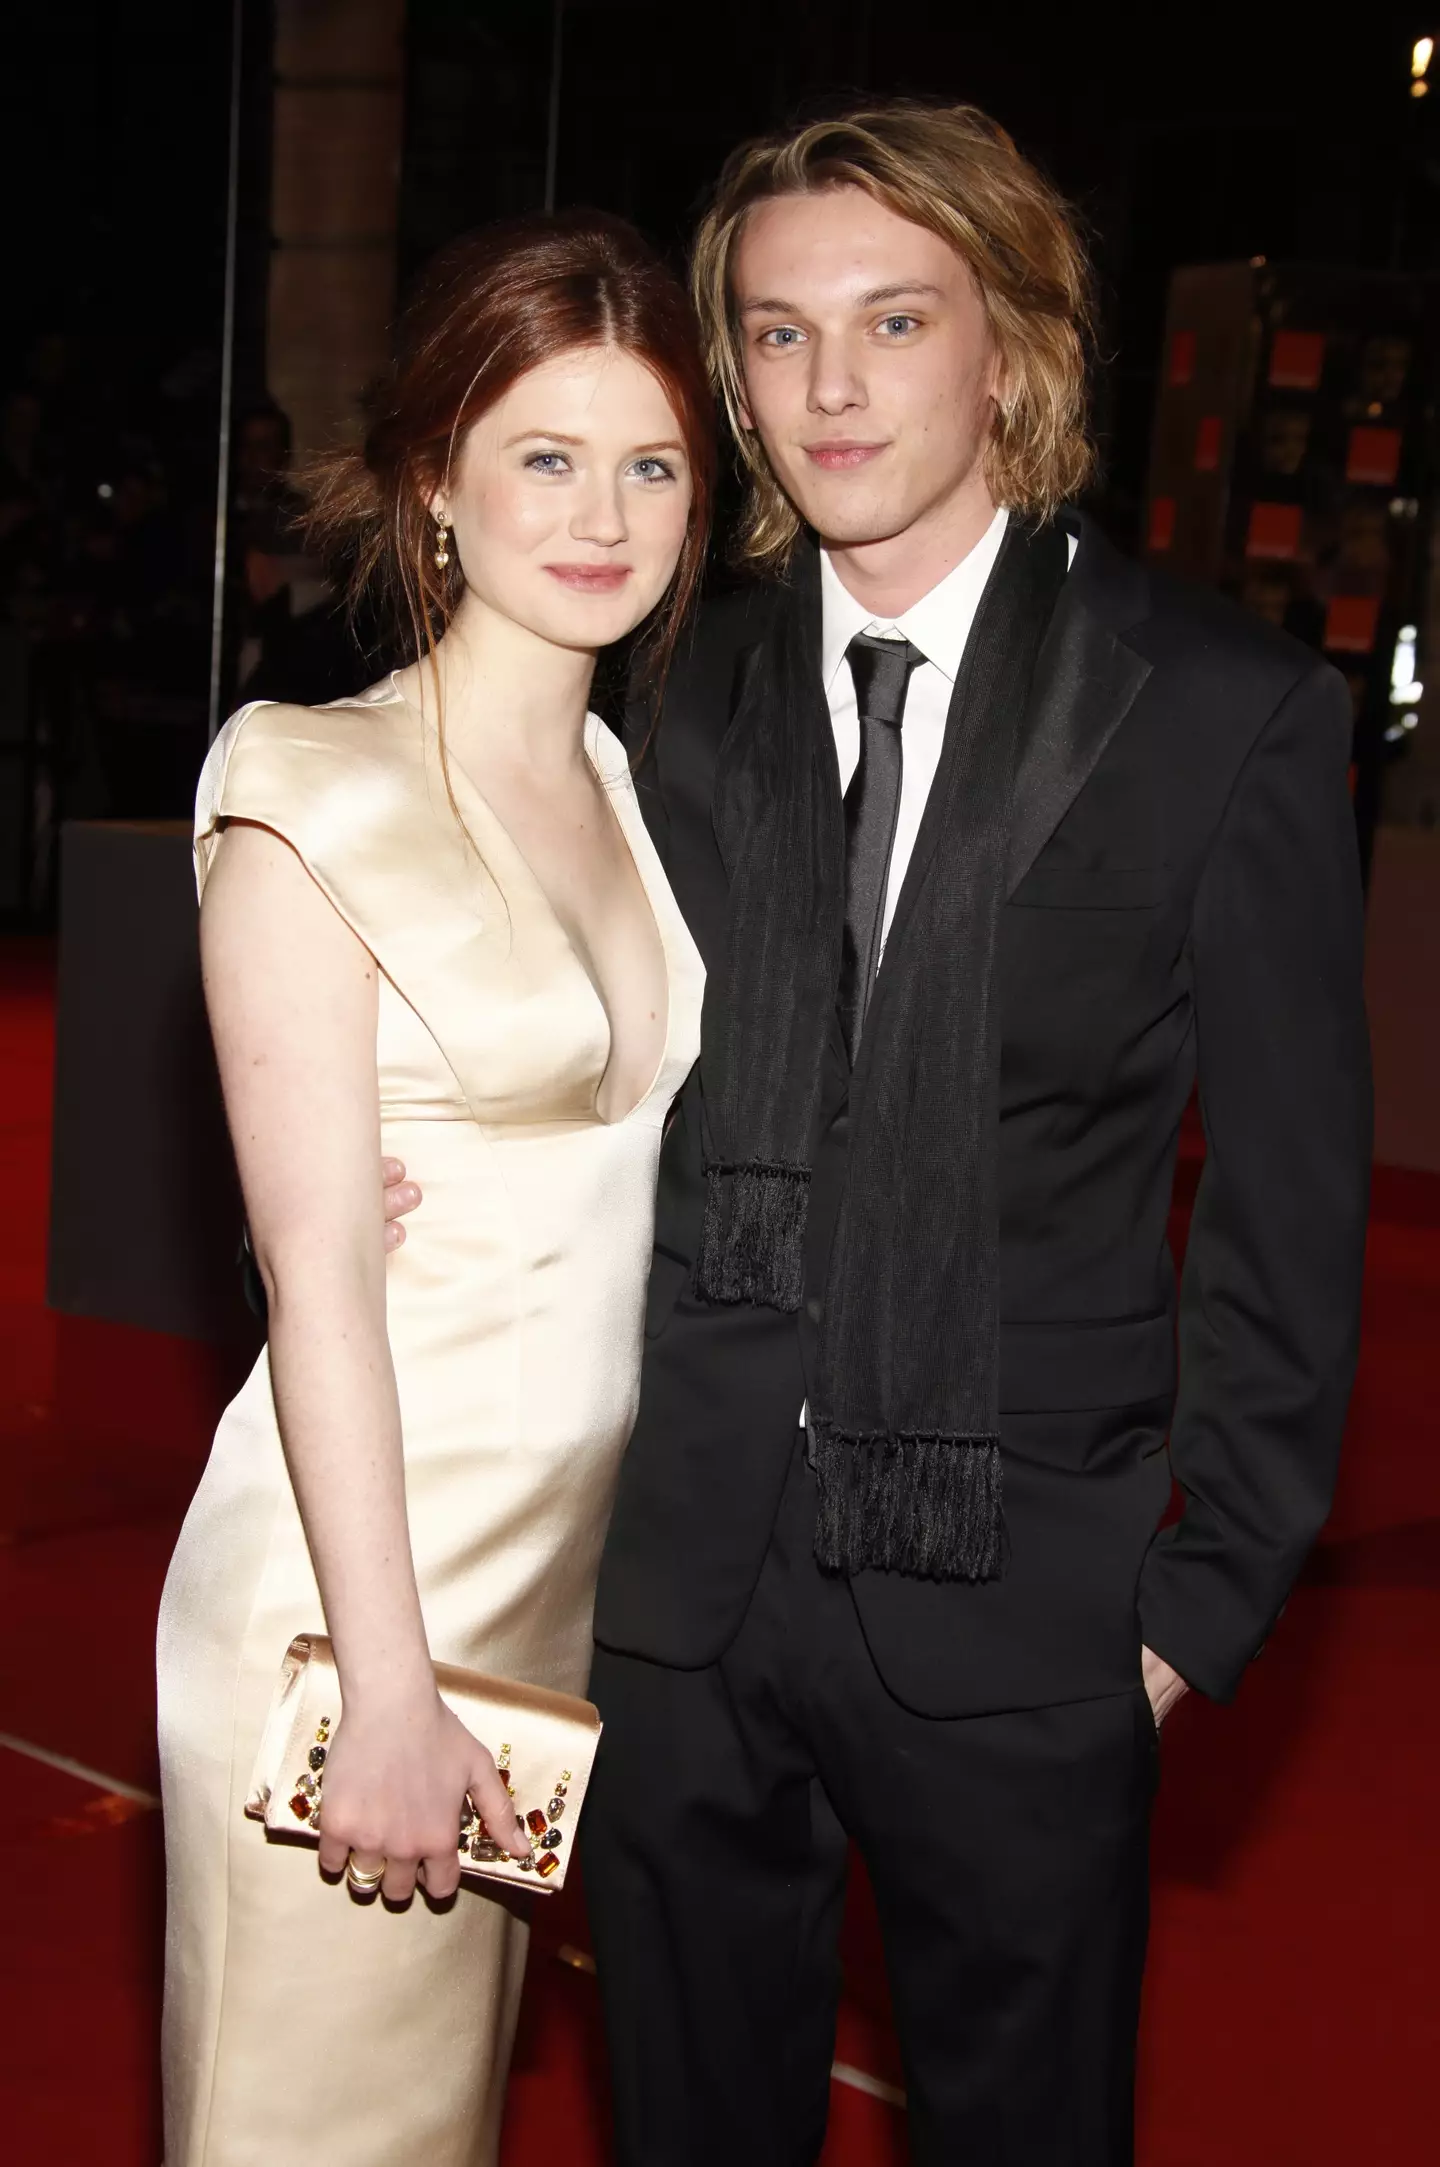 The pair met in 2010 (